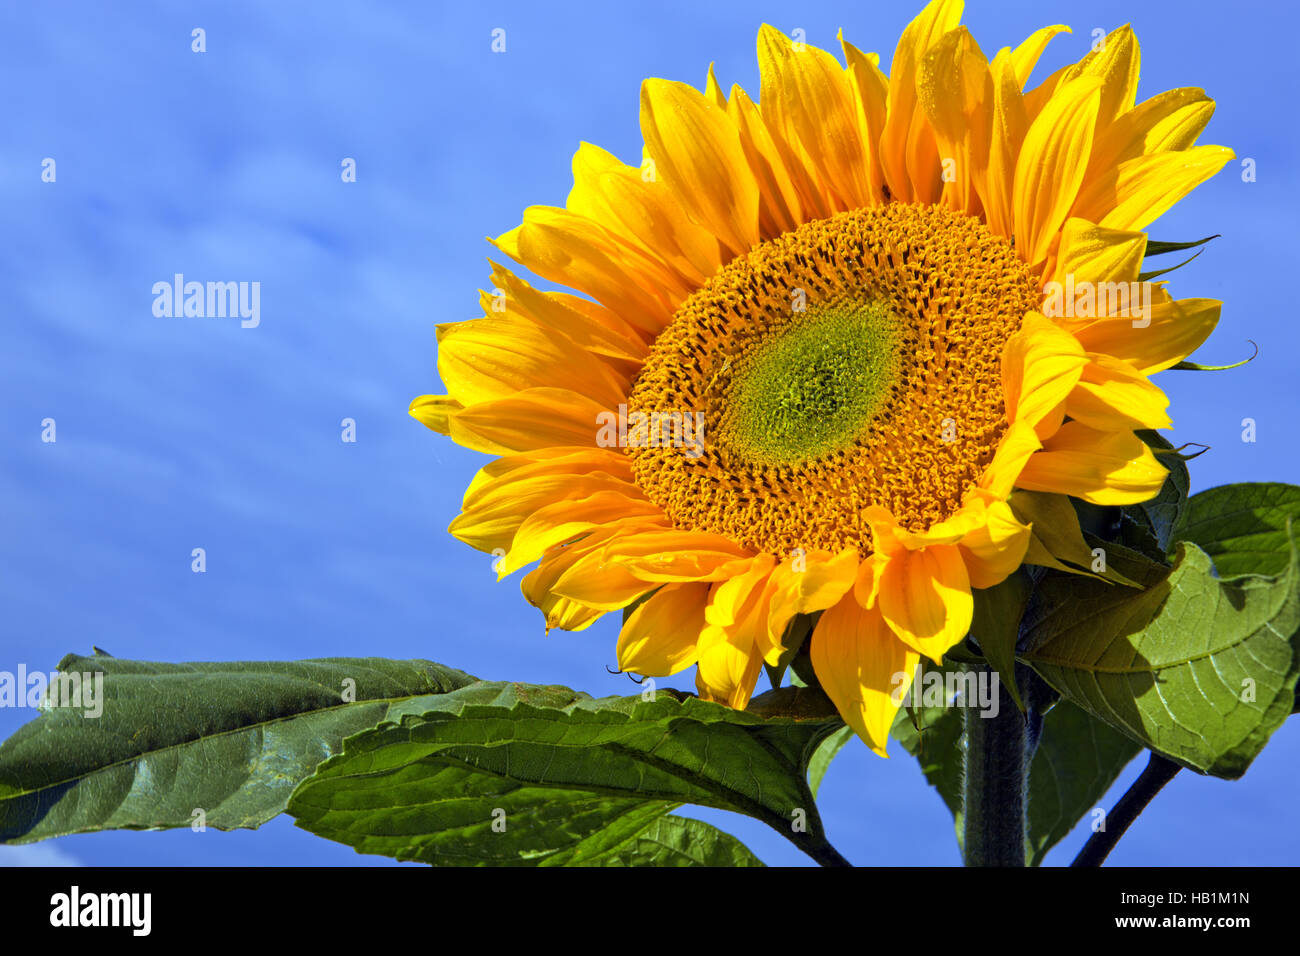 Sun flower against a blue sky. Stock Photo